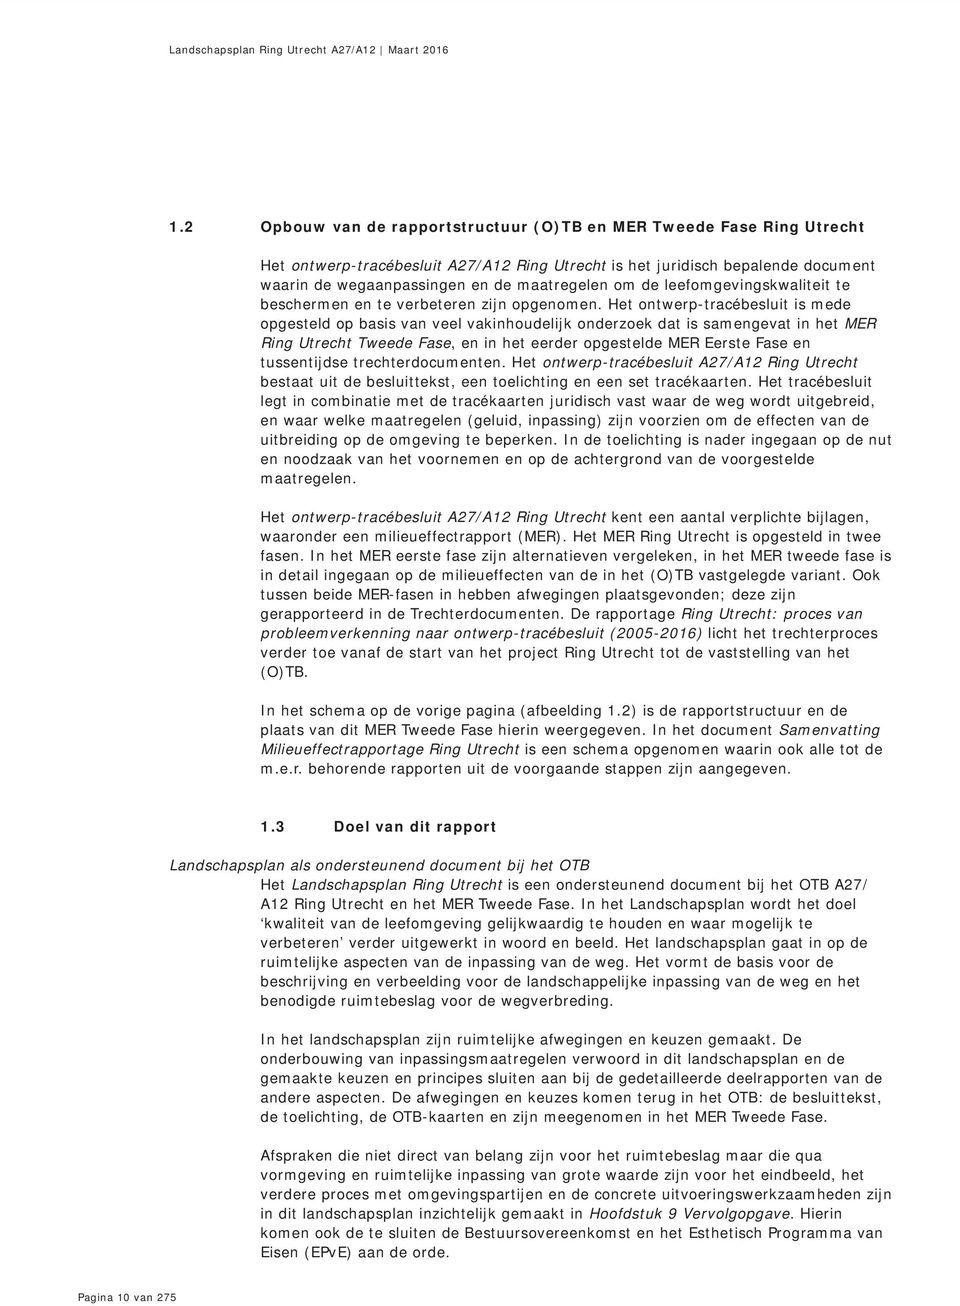 Het ontwerp-tracébesluit is mede opgesteld op basis van veel vakinhoudelijk onderzoek dat is samengevat in het MER Ring Utrecht Tweede Fase, en in het eerder opgestelde MER Eerste Fase en